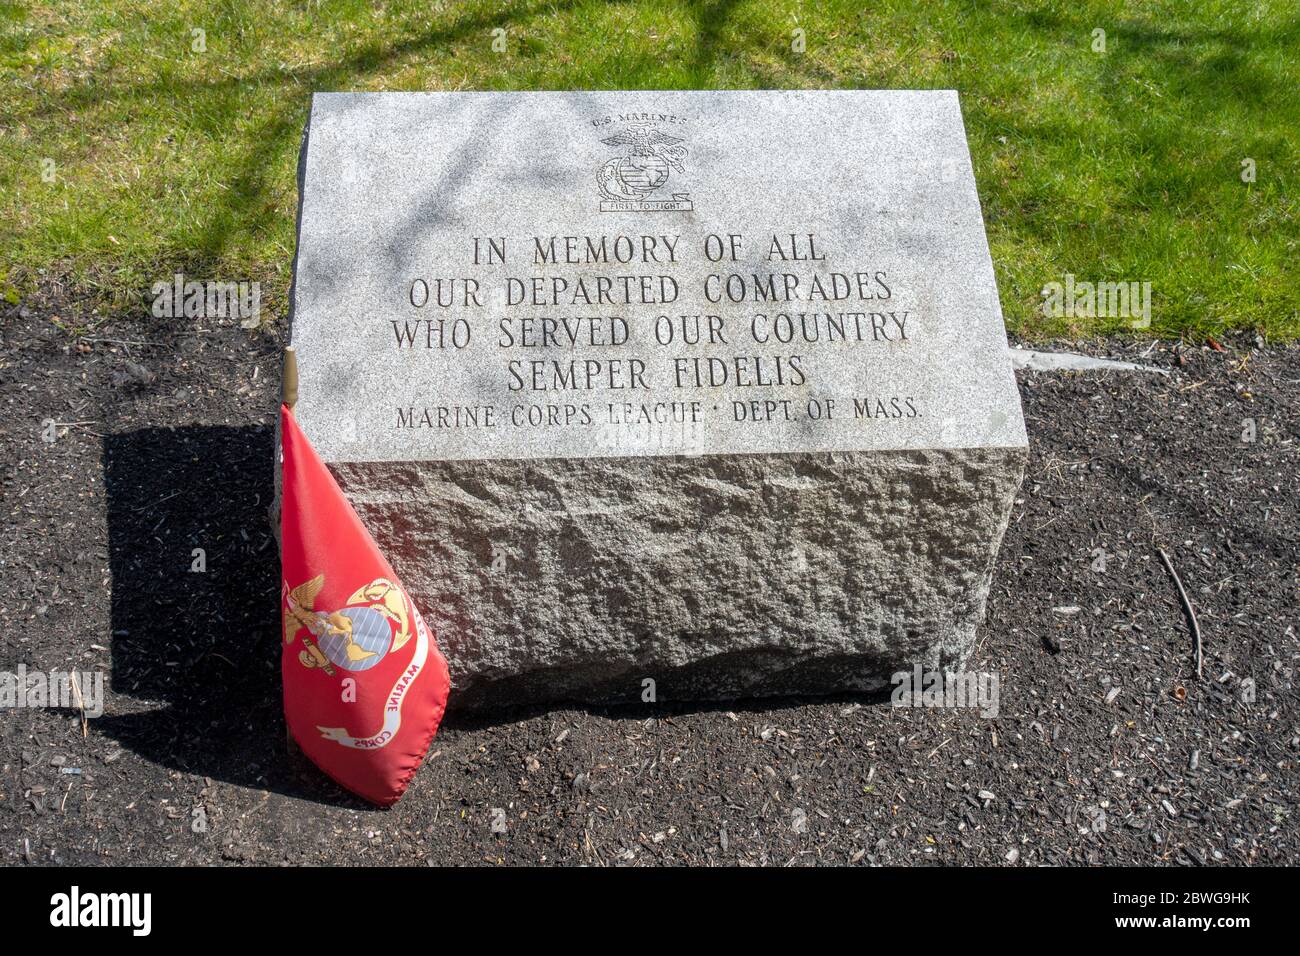 Mémorial de Pierre gravée en hommage aux Marines des États-Unis, premier à combattre, en mémoire de tous nos camarades partis qui ont servi notre pays Semper Fidelis Banque D'Images